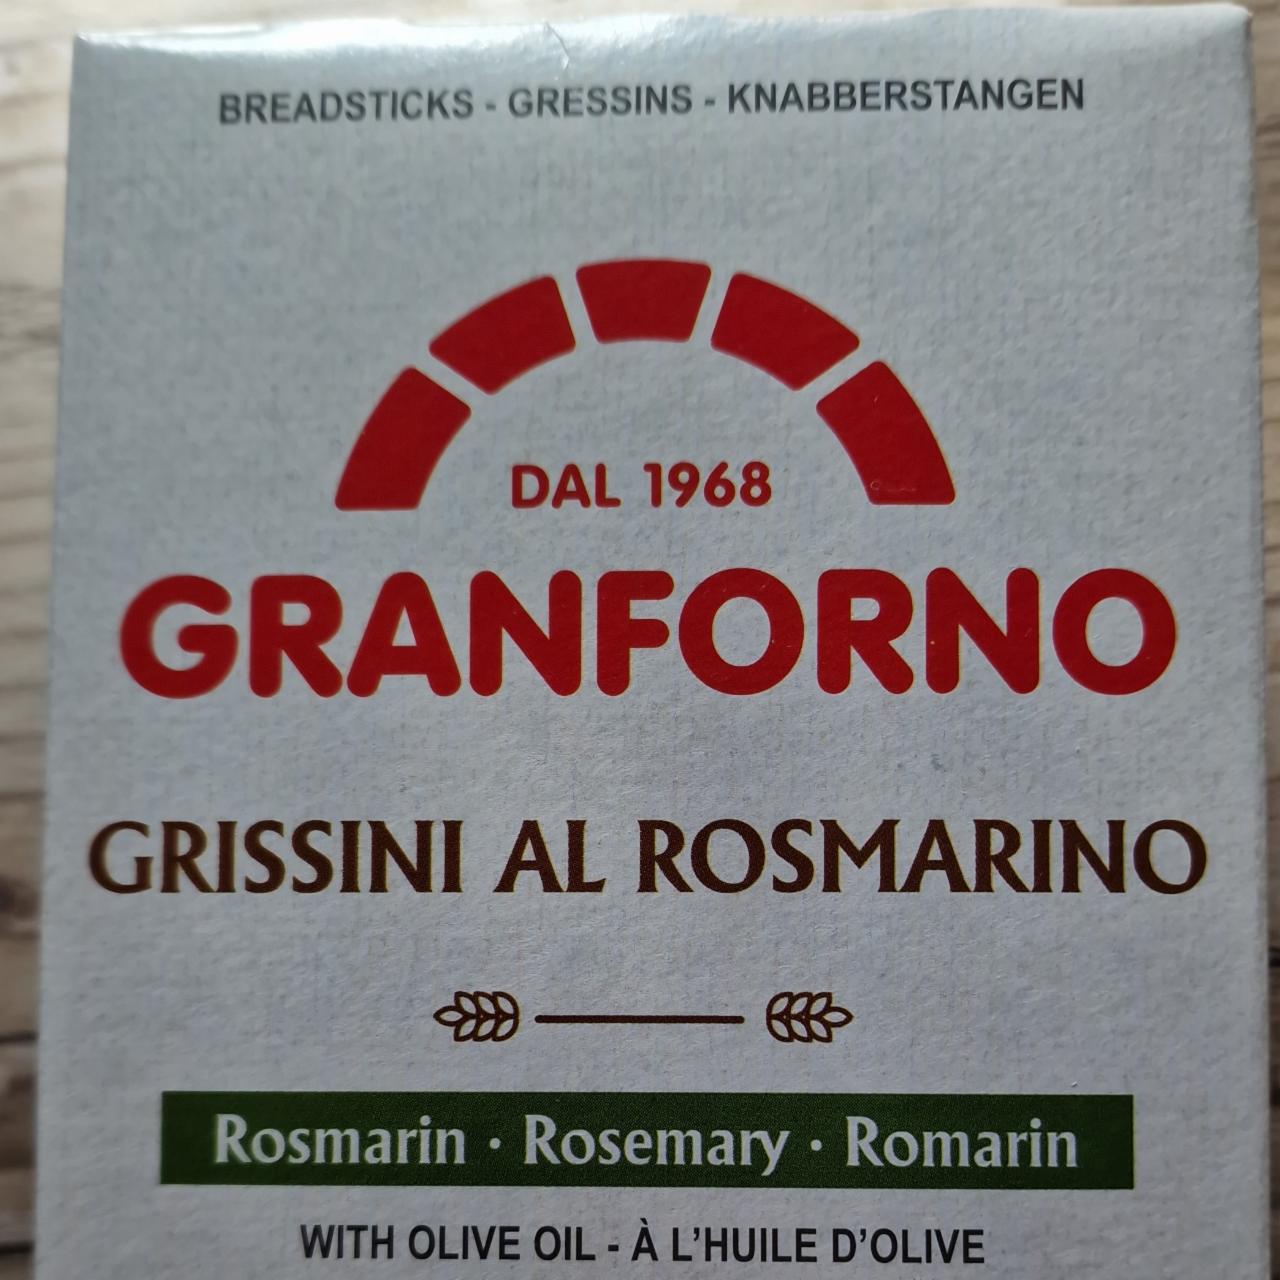 Fotografie - Grissini al rosmarino Granforno